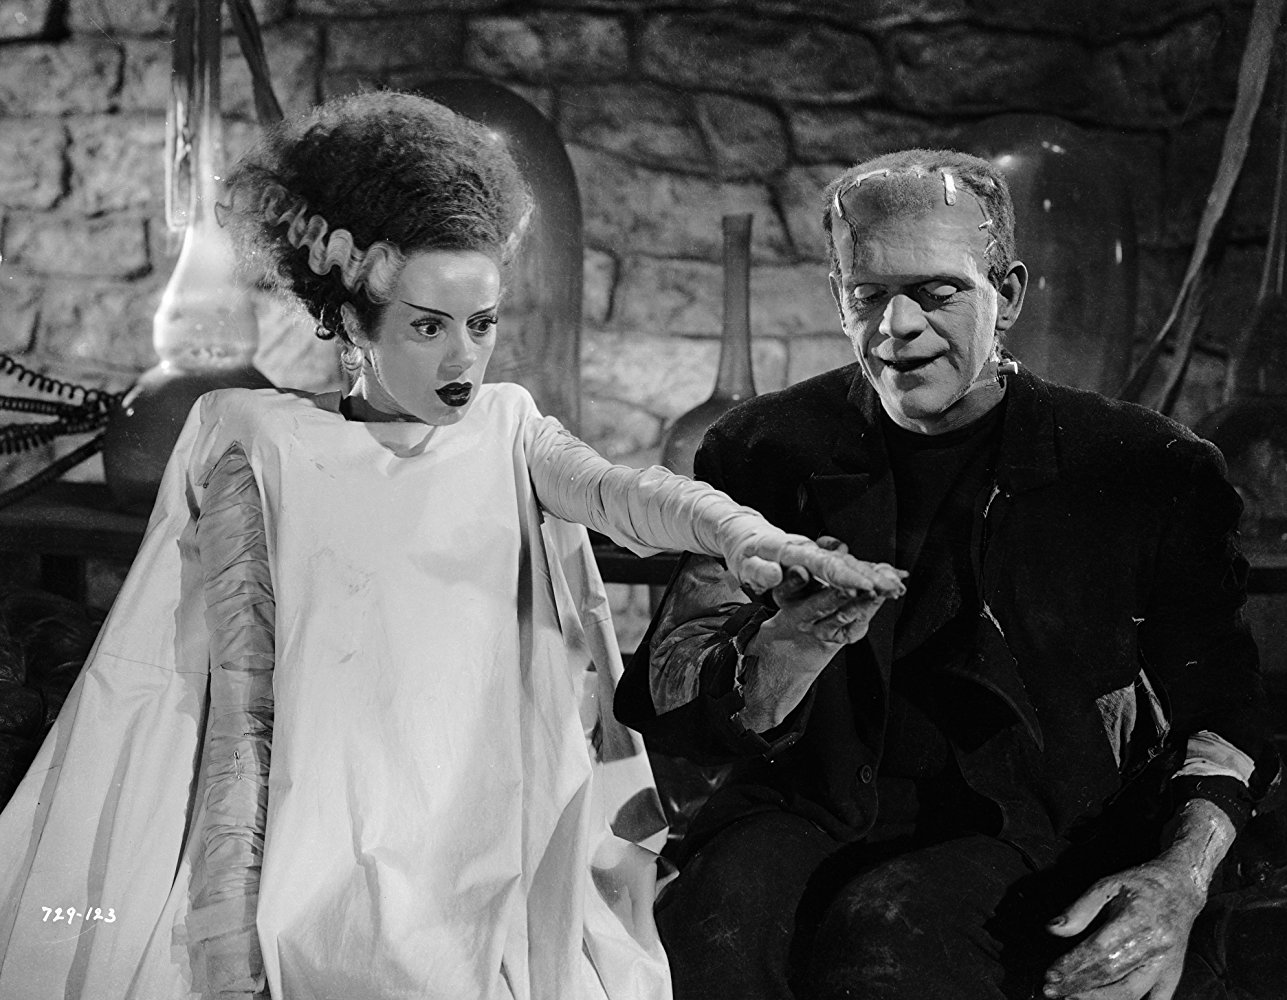 Frankenstein's Bride